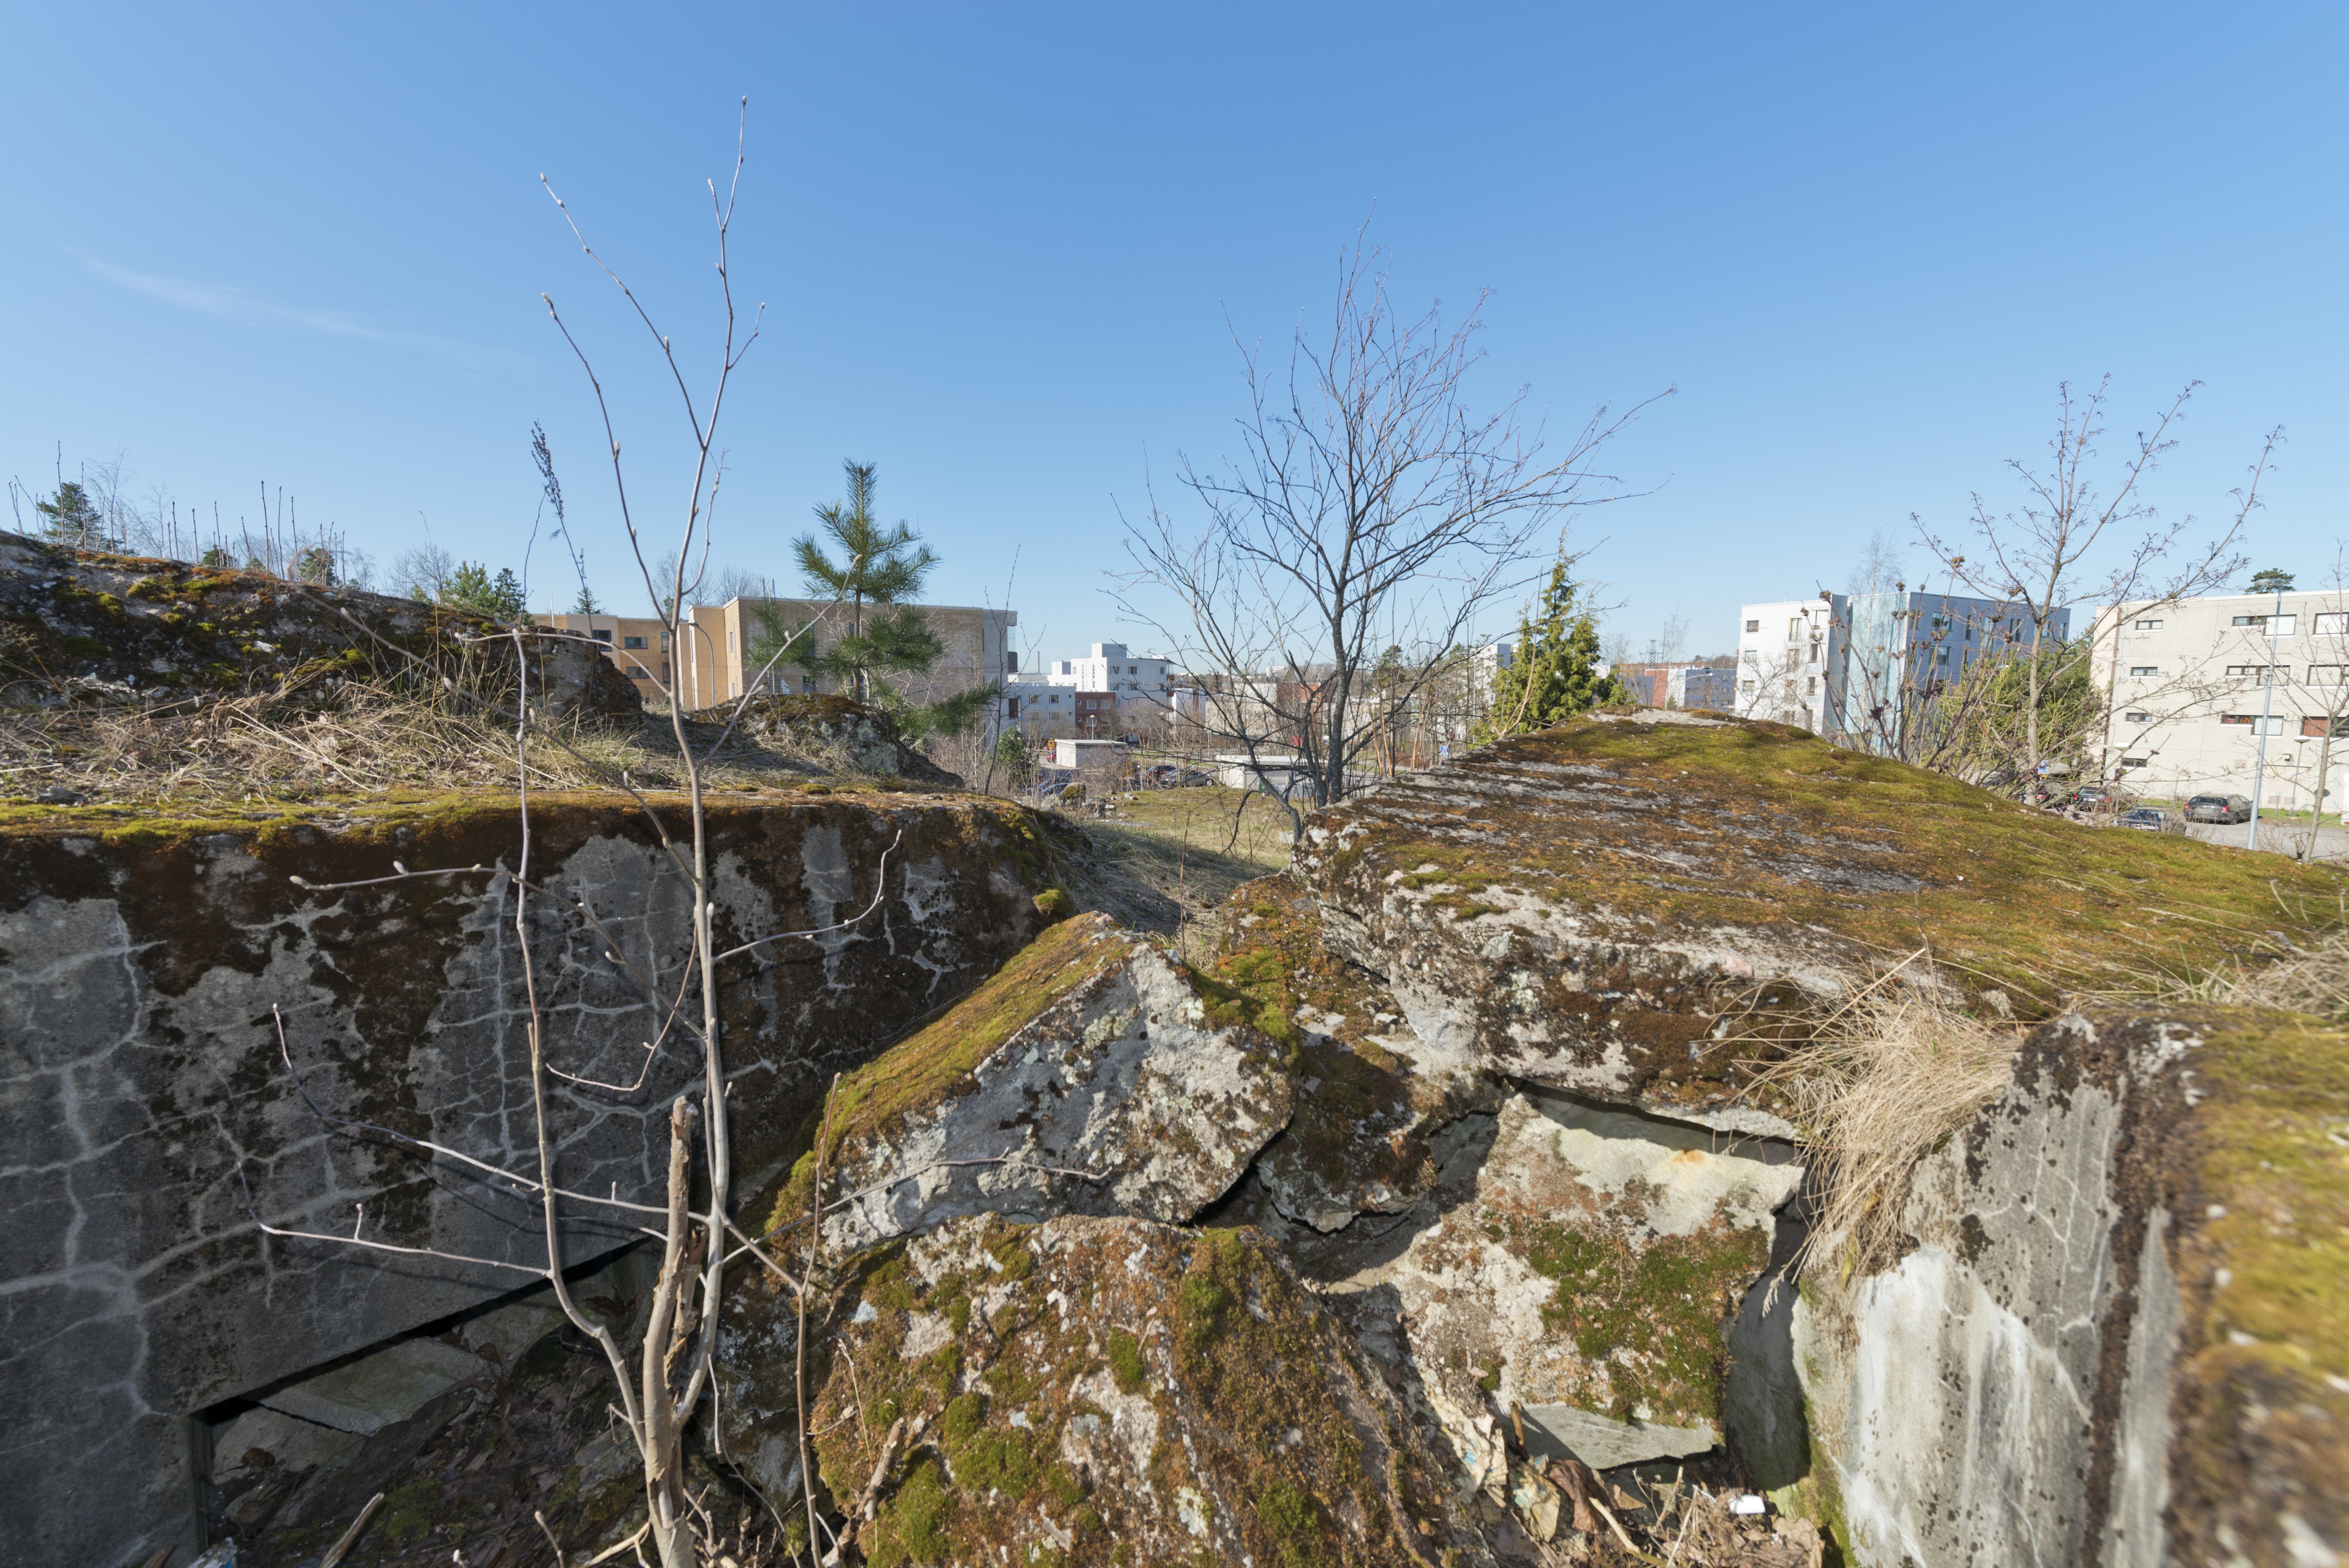 Länsimäki. Ensimmäisen maailmansodan aikainen maalinnoitus, puolustusasema II:8 Länsimäessä, Vantaalla. Kuvassa betoninen kaarevaa mallia oleva konekivääriasema aseman länsiosassa. Aseman katto on räjäytetty. Betoninpalat täyttävät aseman ja ampumasektorin. Seinässä vasemmalla erottuu toisen komeron yläreuna. Taustalla näkyy tie ja asuinrakennuksia. Kuvaussuuntana länsi-lounas.